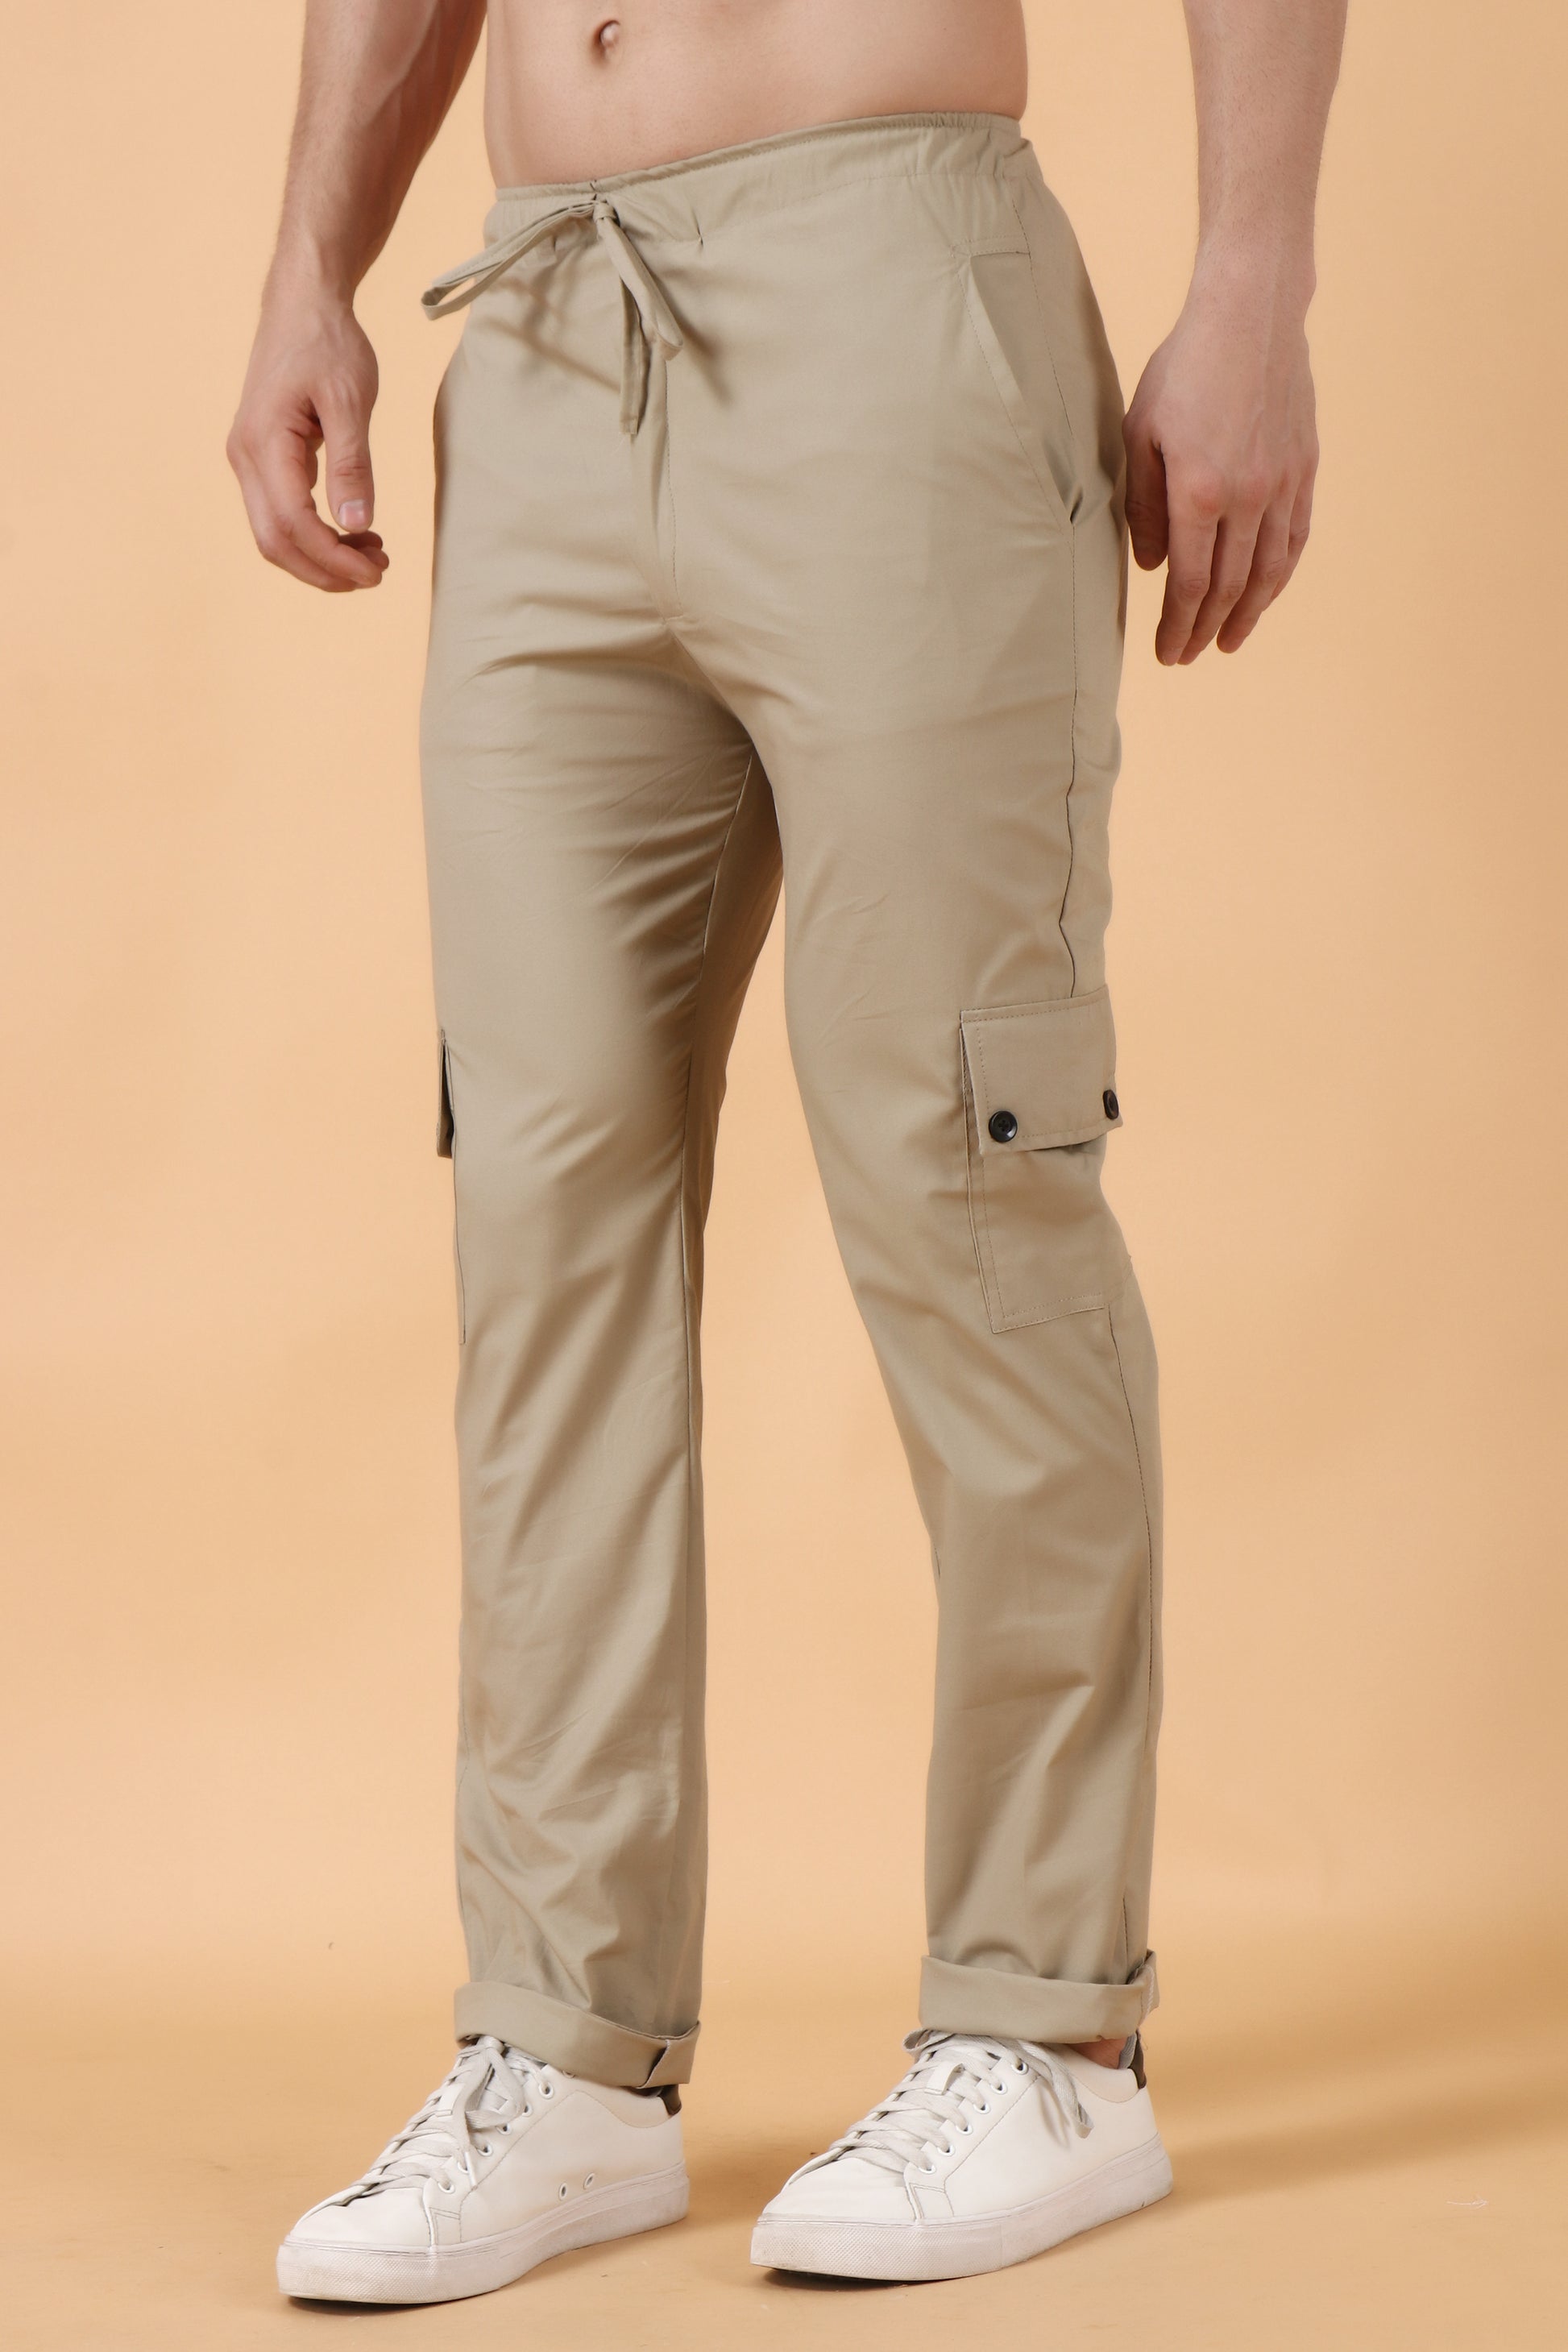 Buy Cargo Pants For Men - Apella